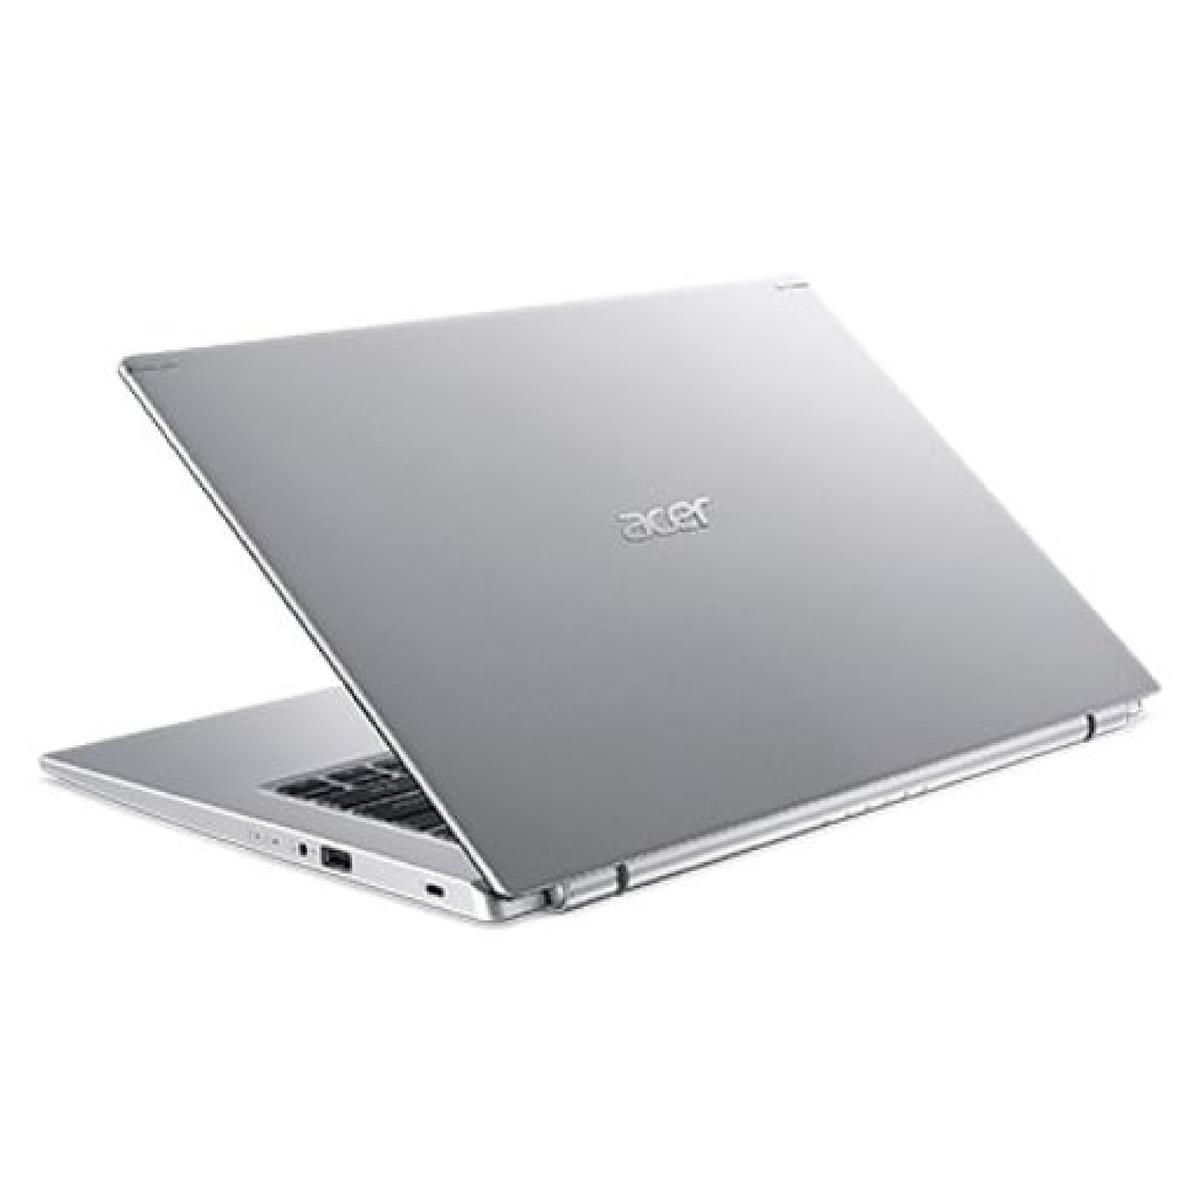 Acer Aspire 5 A514-54-58XH Laptop(A514-54-58XH) Intel Core i5- 1135G7 Processor,8GB RAM,512GB SSD,14.0" FHD,Windows 11,Silver,English-Arabic Keyboard